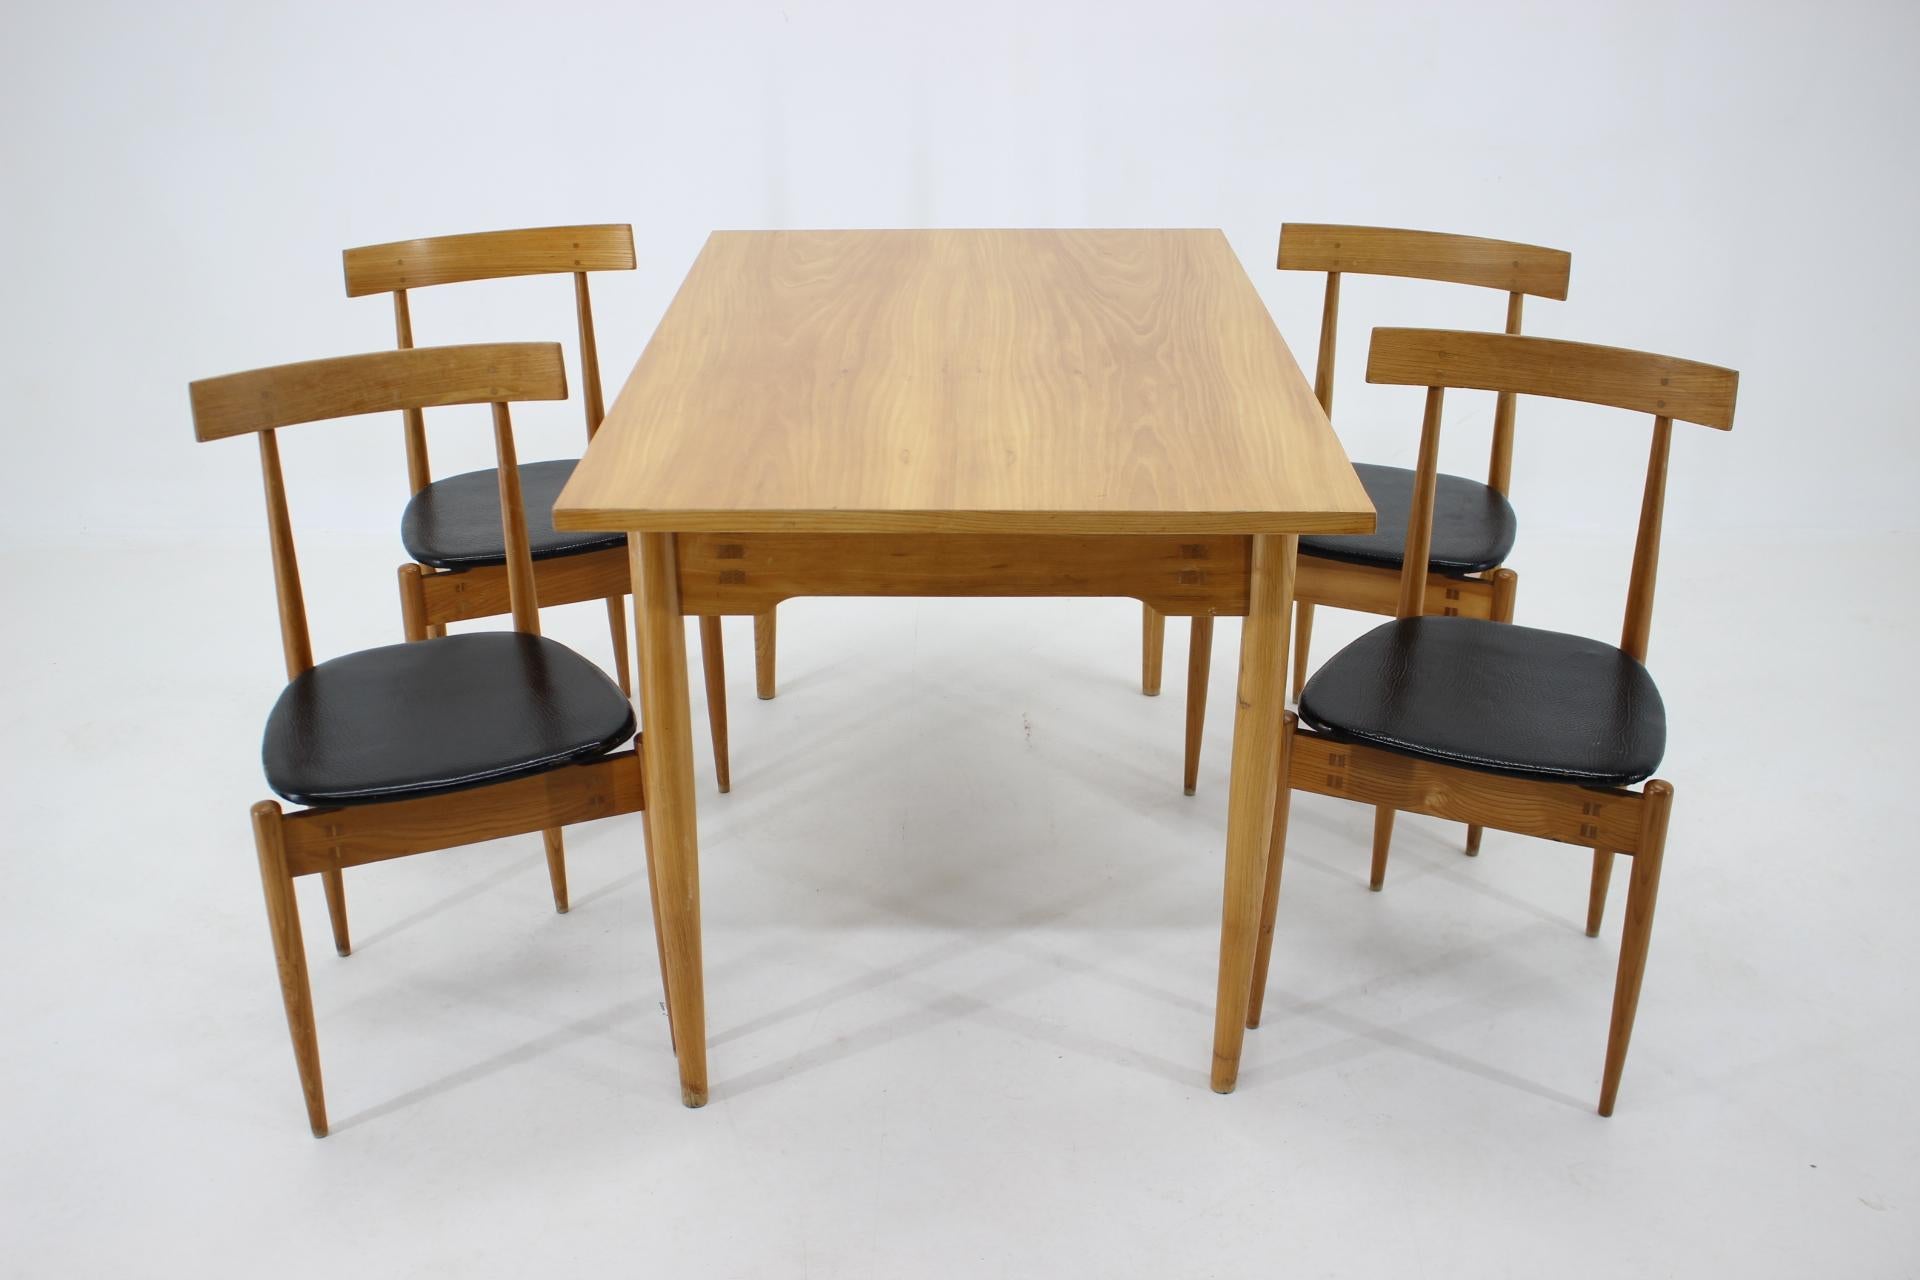 - Bon état d'origine avec quelques signes d'utilisation 
- Sellerie en cuir en bon état avec quelques signes d'utilisation 
- Dimensions de la table : H:74 L:121 P:77
- Chaise - hauteur du siège 43 cm.